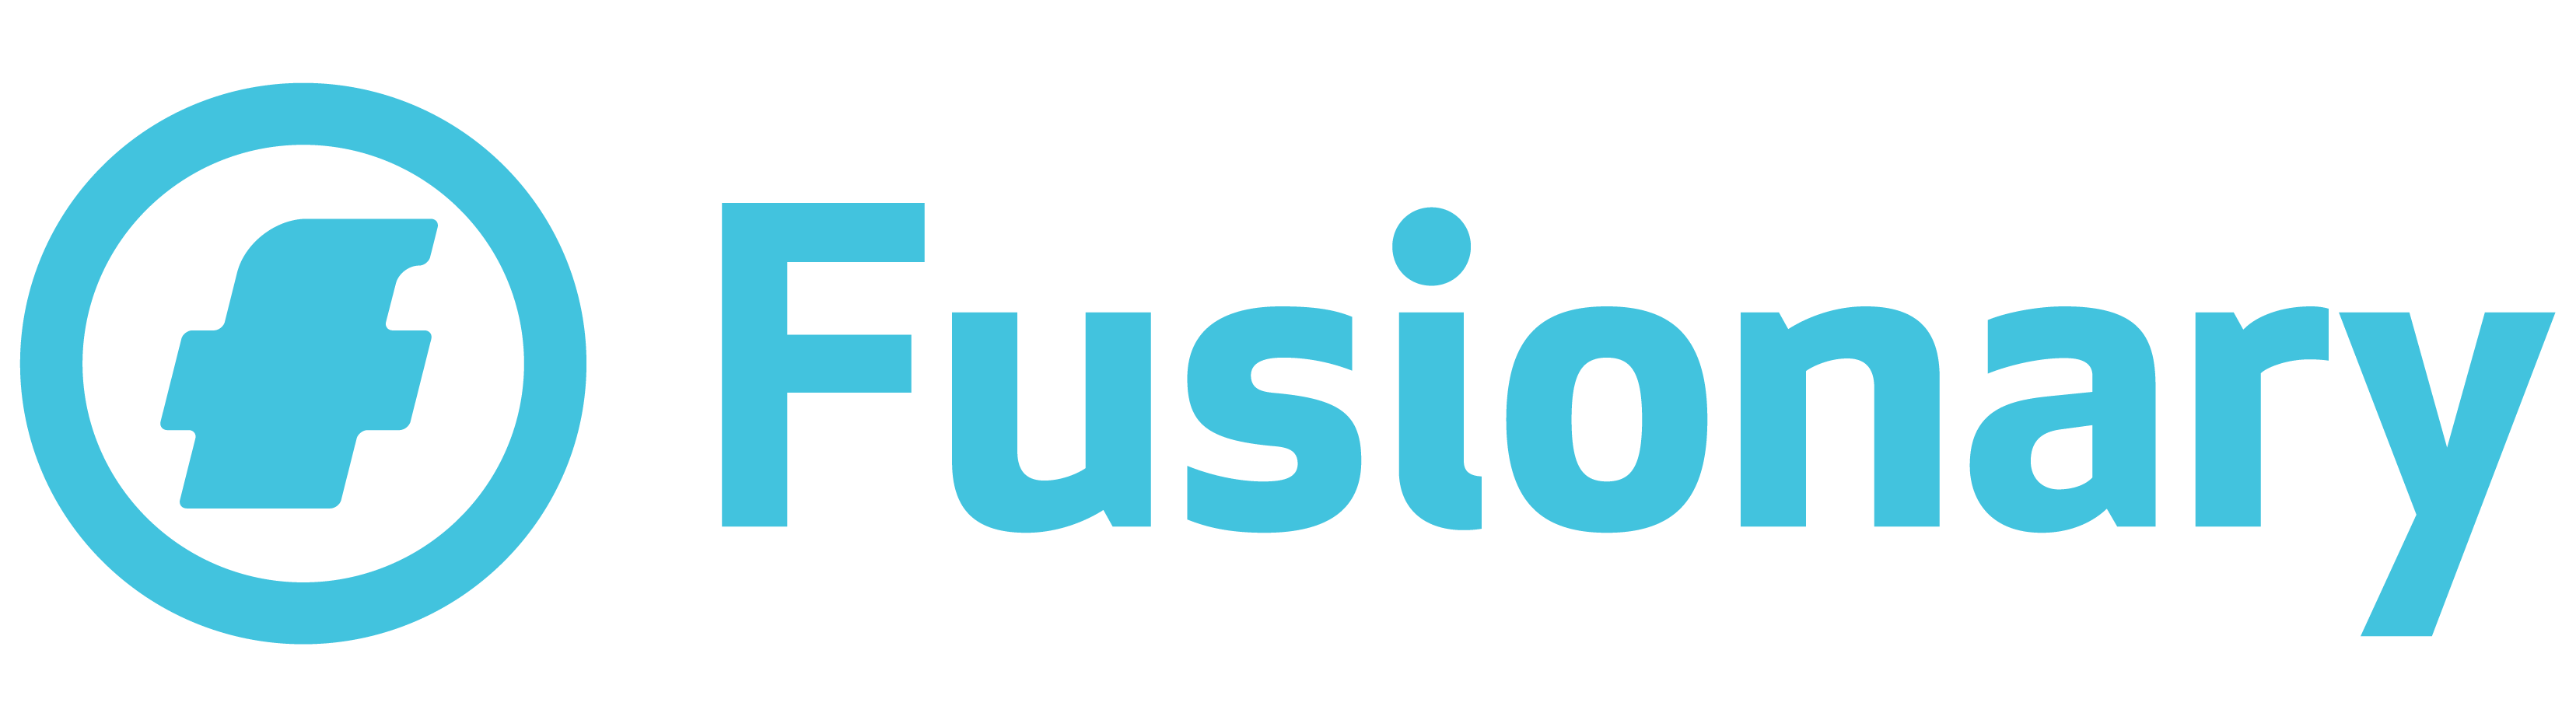 Fusionary logo